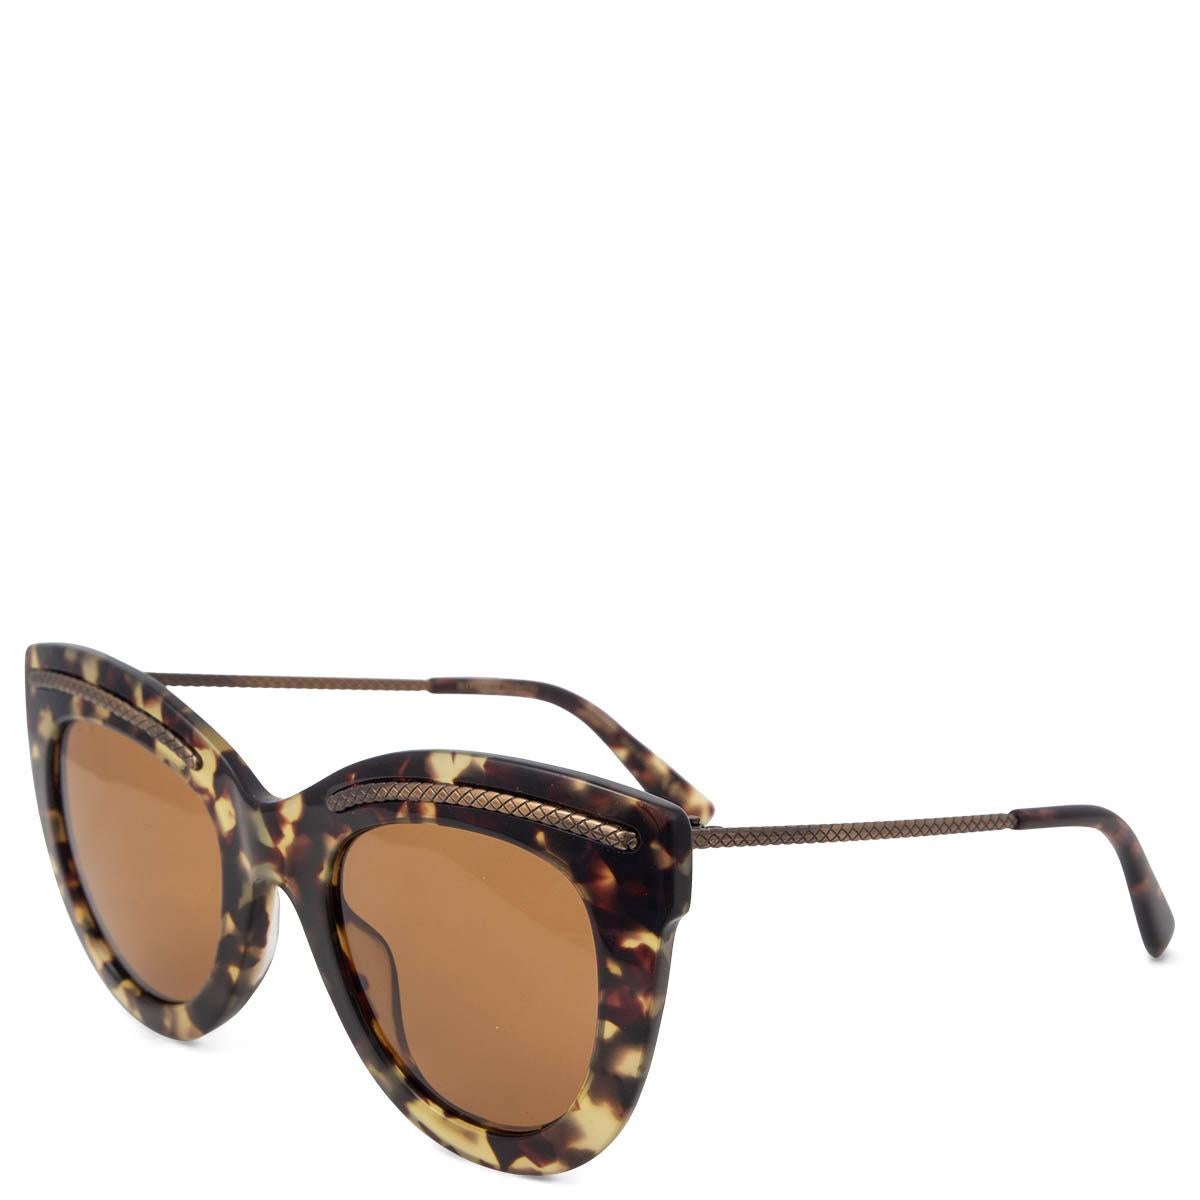 100% authentische Bottega Veneta BV0030S Schildpatt-Sonnenbrille aus dunkelbraunem und beigem Acetat mit Intrecciato-Metalldetails vorne und an den Bügeln. Sie wurden getragen und sind in ausgezeichnetem Zustand. Kommt mit Etui.